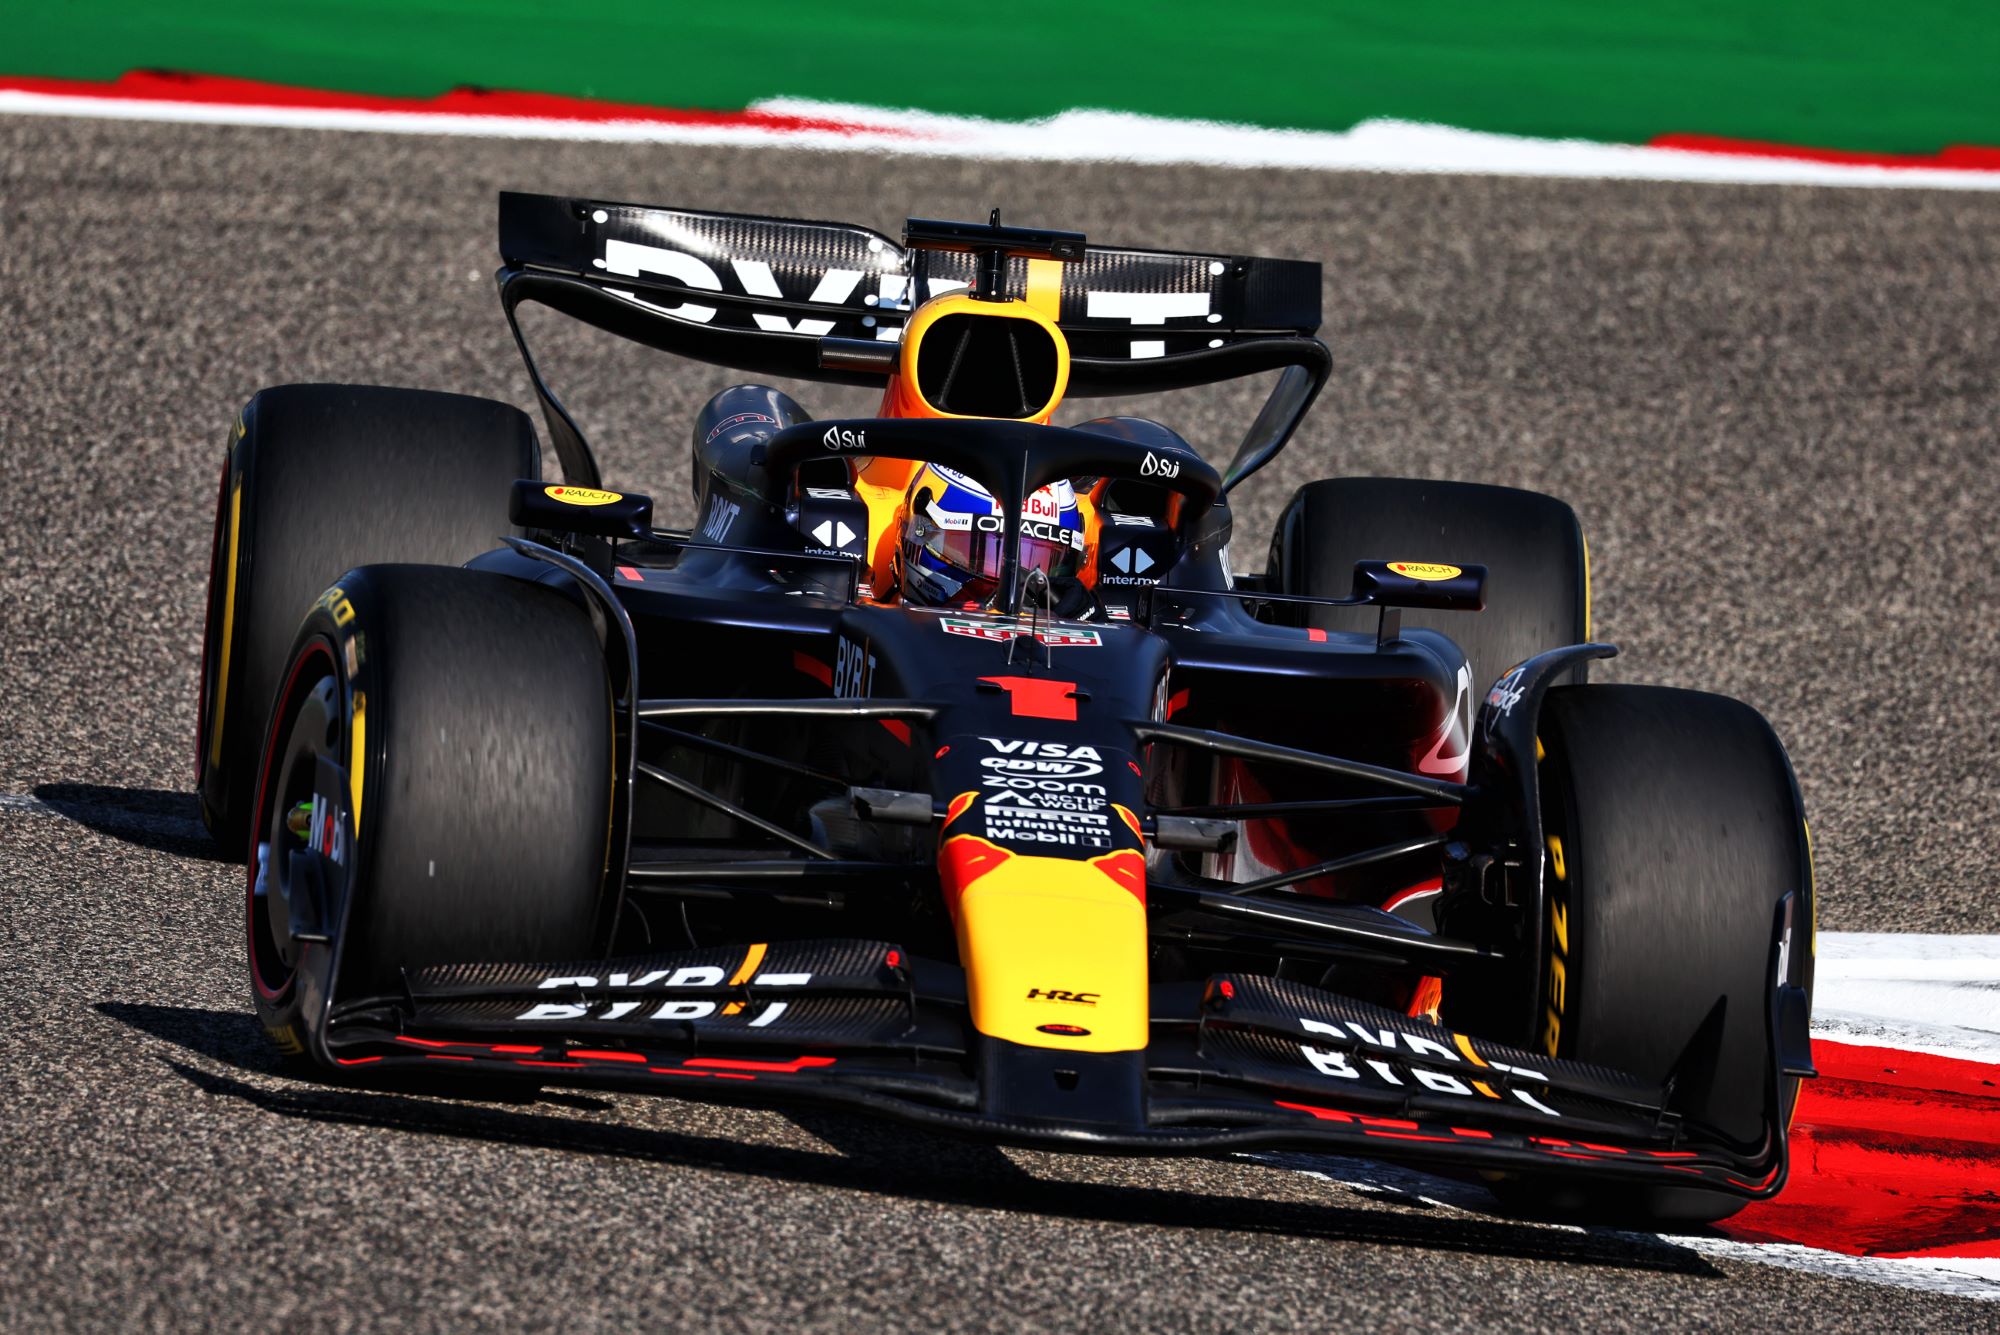 F1: Verstappen confirma favoritismo e garante a pole position para a Red Bull no Bahrein